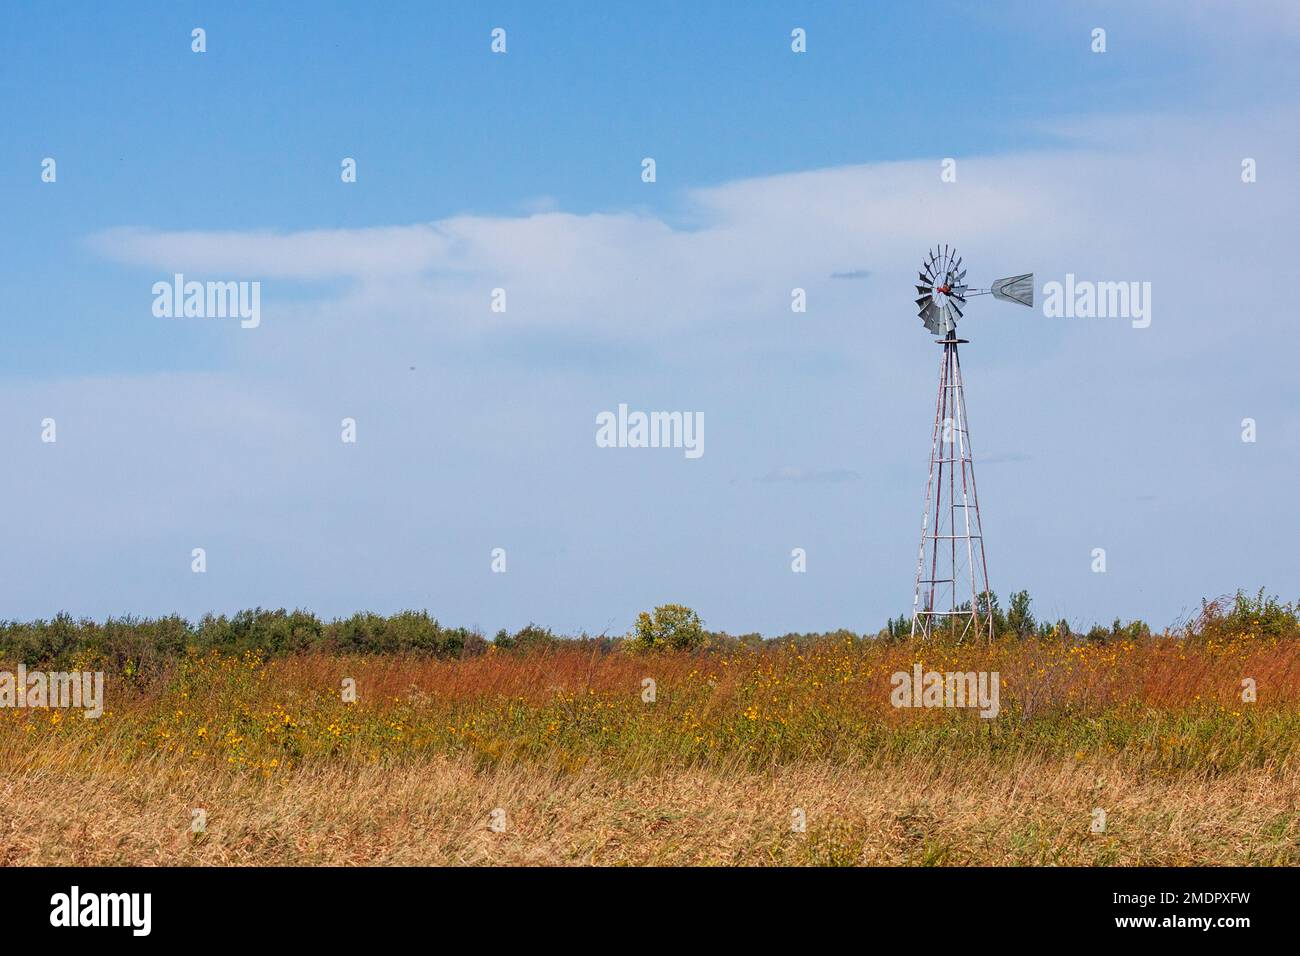 Über einer riesigen Prärie erhebt sich eine traditionelle vierbeinige Windmühle in den blauen Himmel. Stockfoto